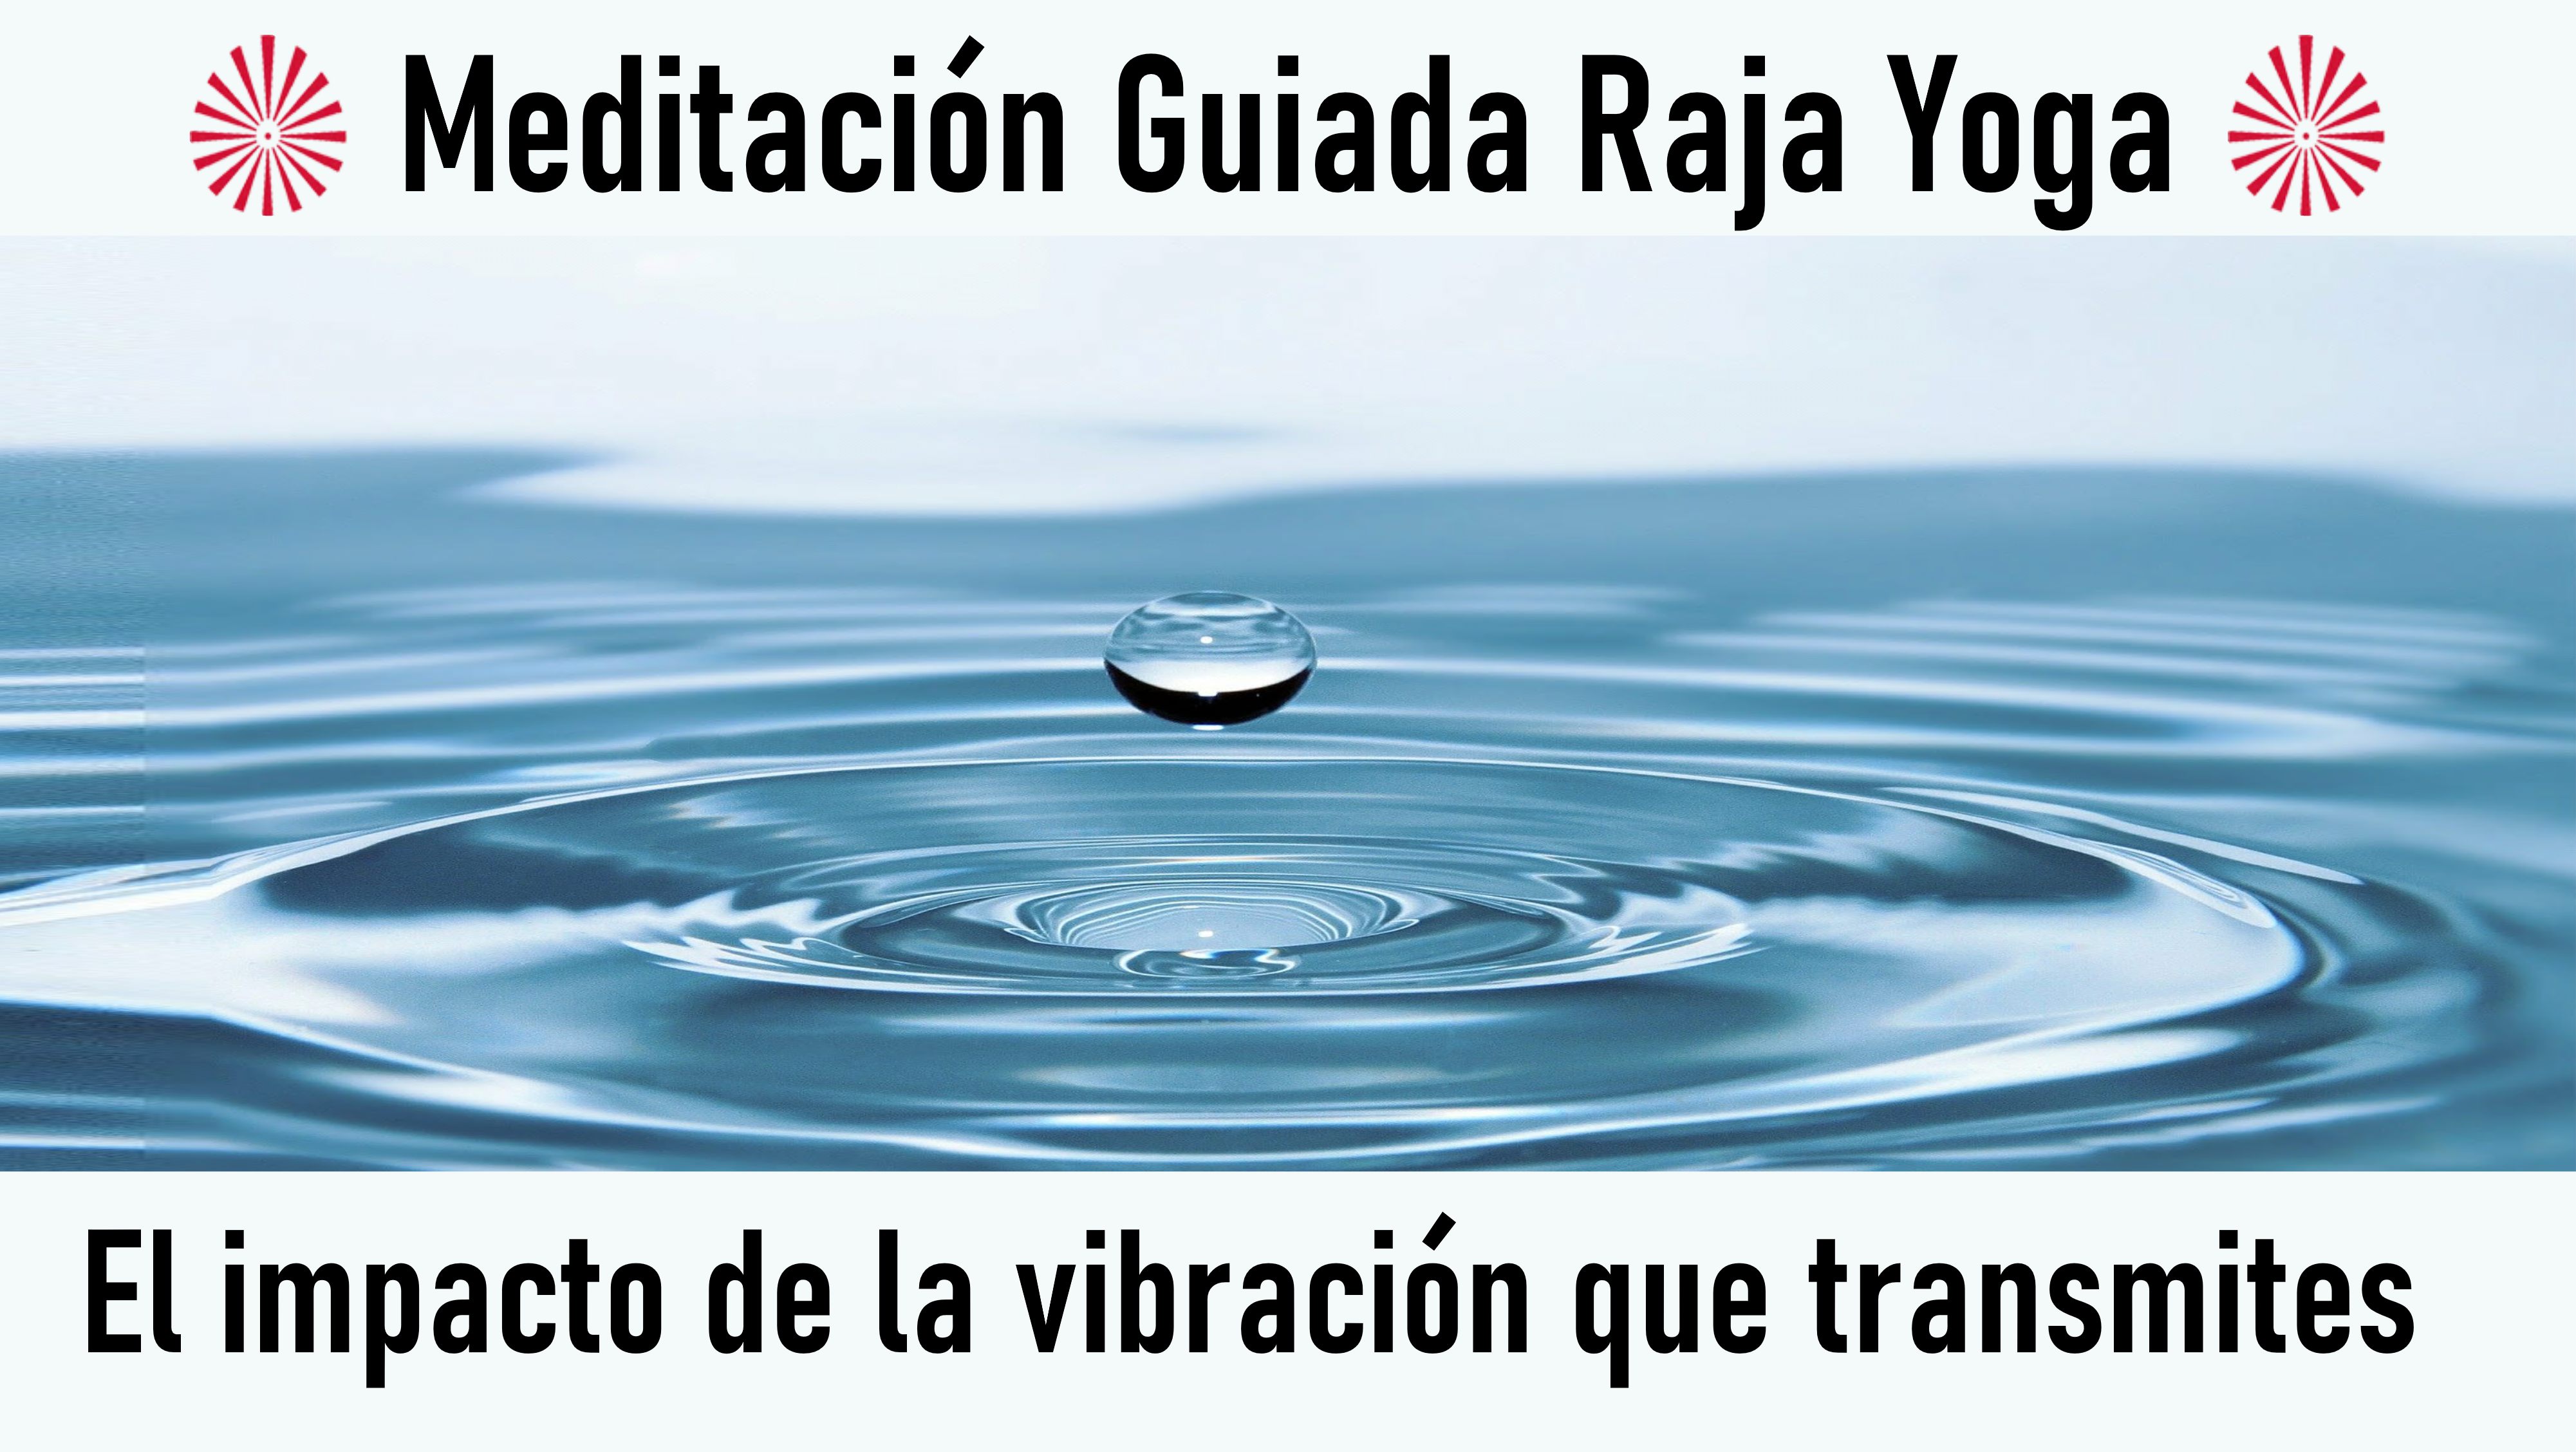 Meditación Raja Yoga: El impacto de la vibración que transmites (23 Julio 2020) On-line desde Barcelona